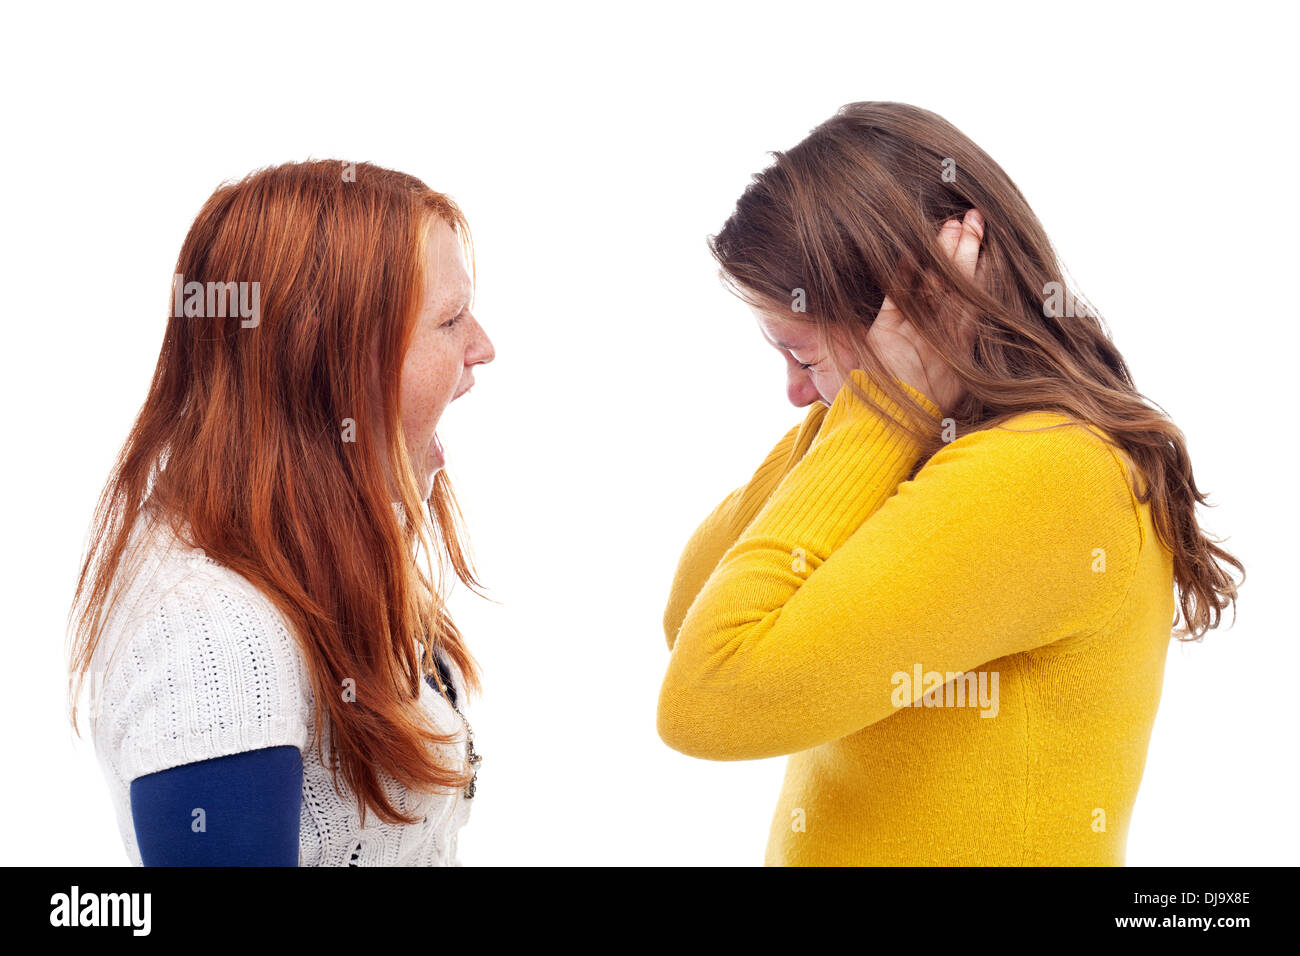 Adolescents - fille en colère crier hurler à son ami - isolé Banque D'Images